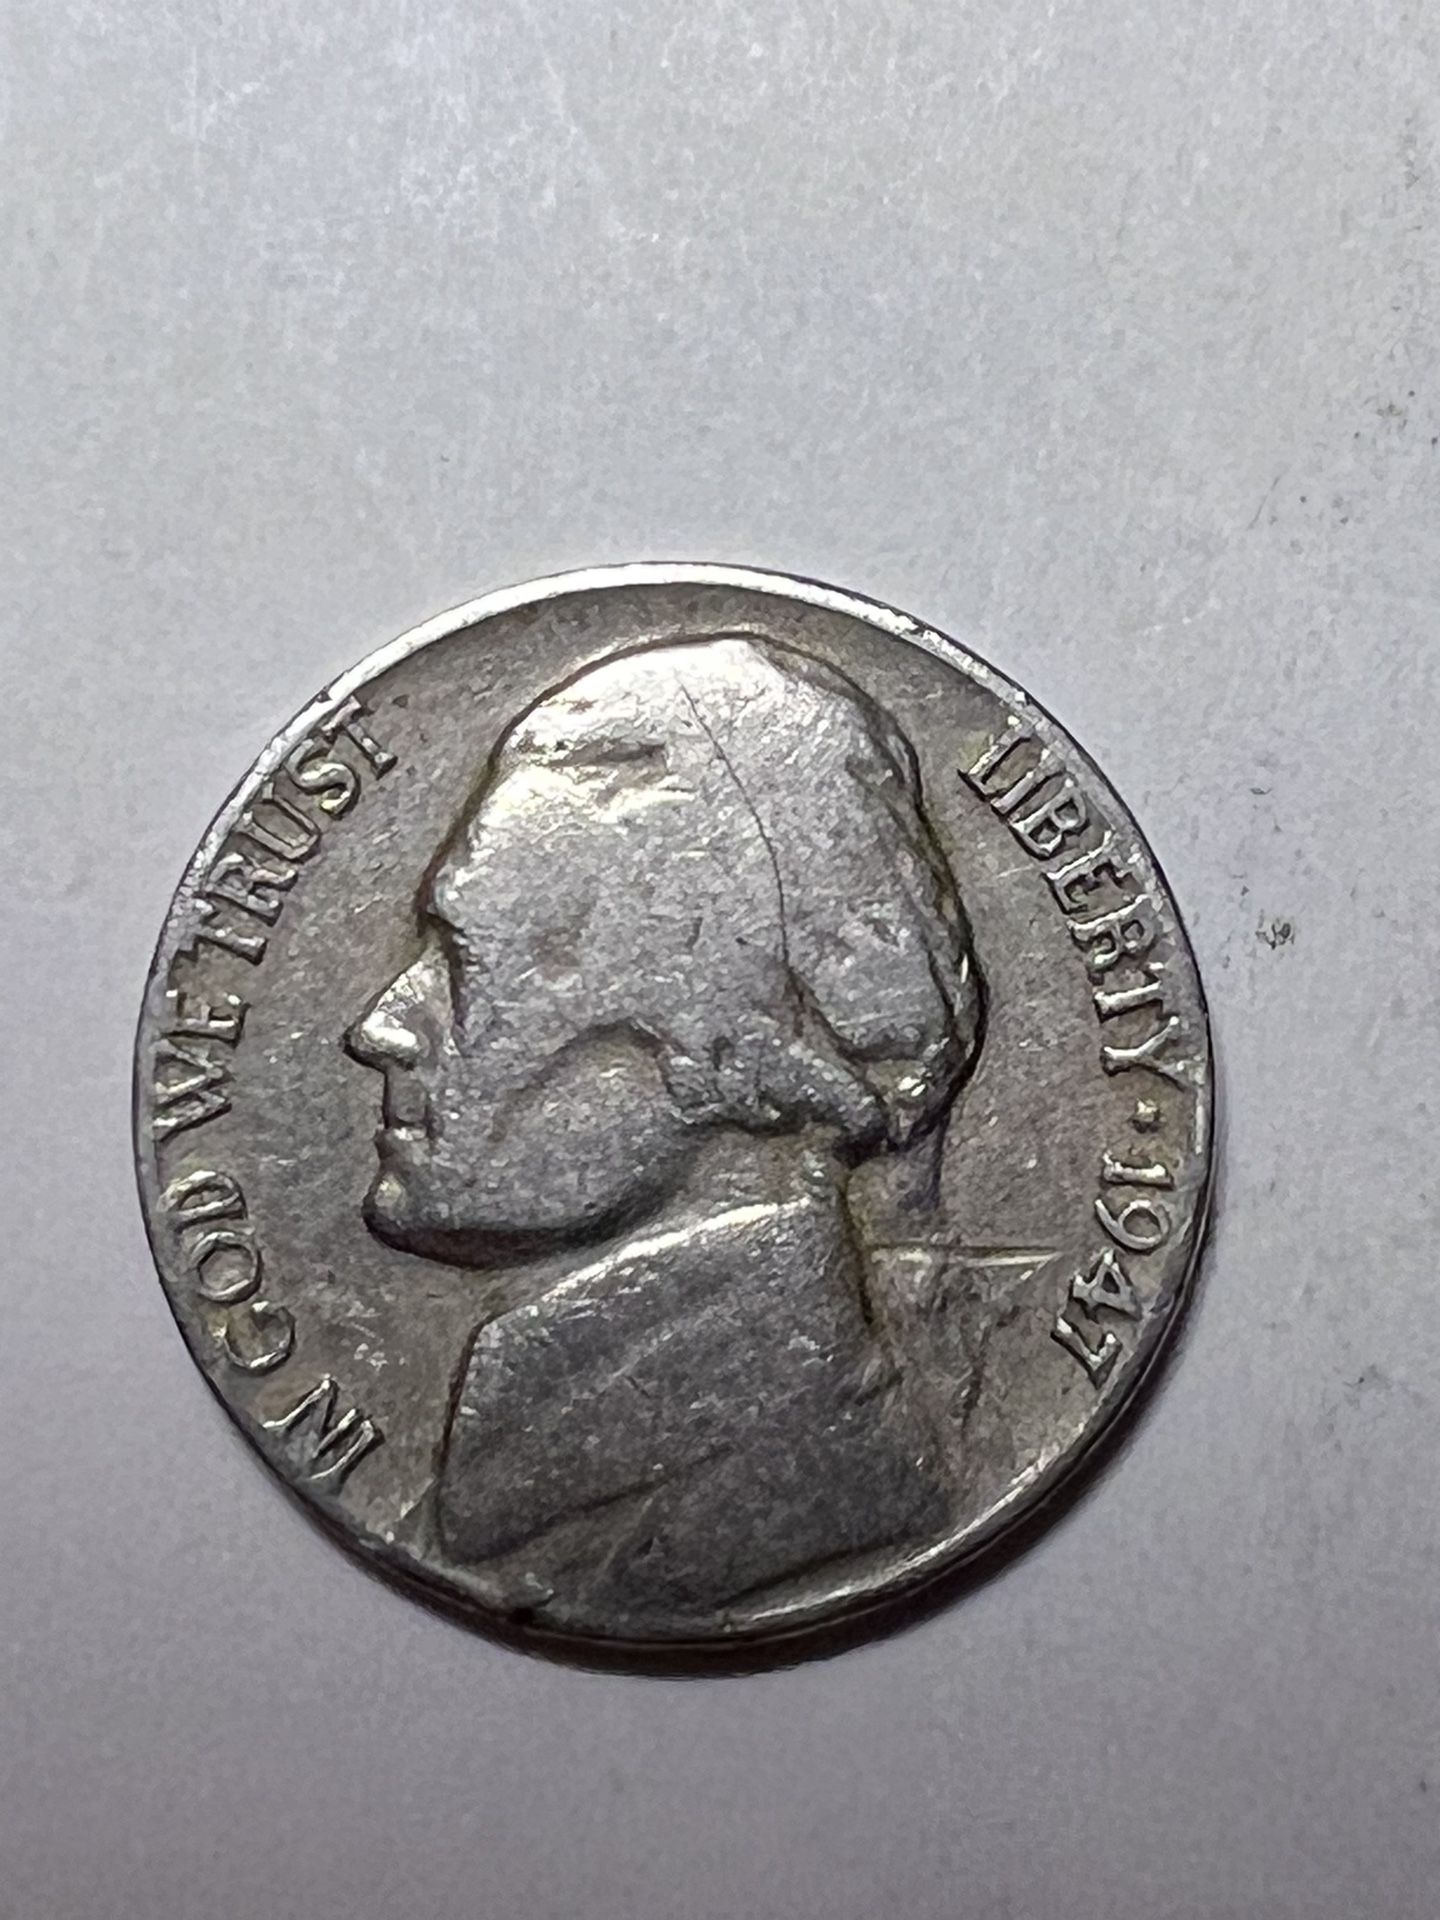 Nickel 1947